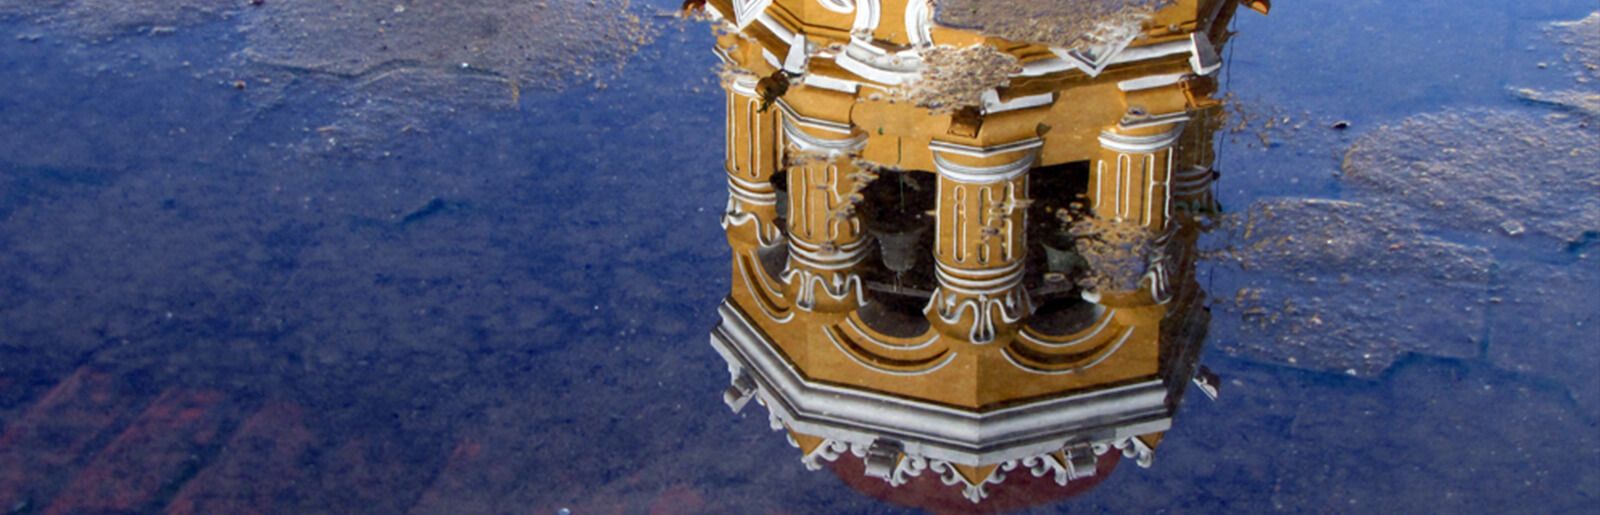 Reflejo de la catedral de Mompox, el destino ideal para el turismo religioso en Colombia